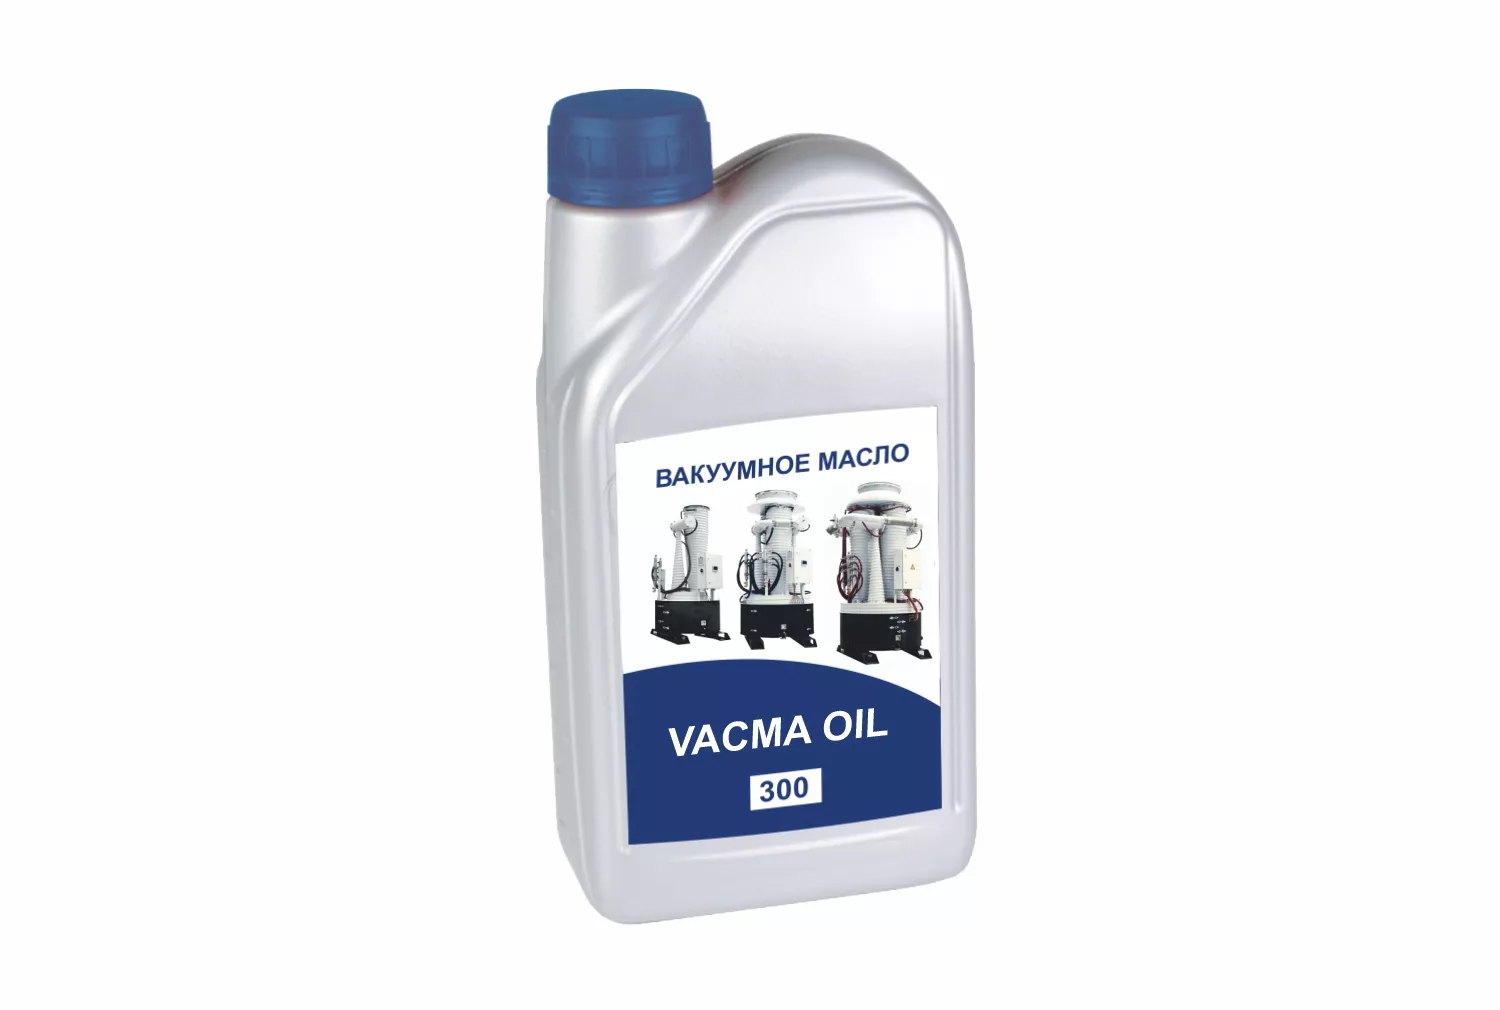 Купить в АО Вакууммаш ✓ Минеральное вакуумное масло VACMA OIL 300 по цене производителя